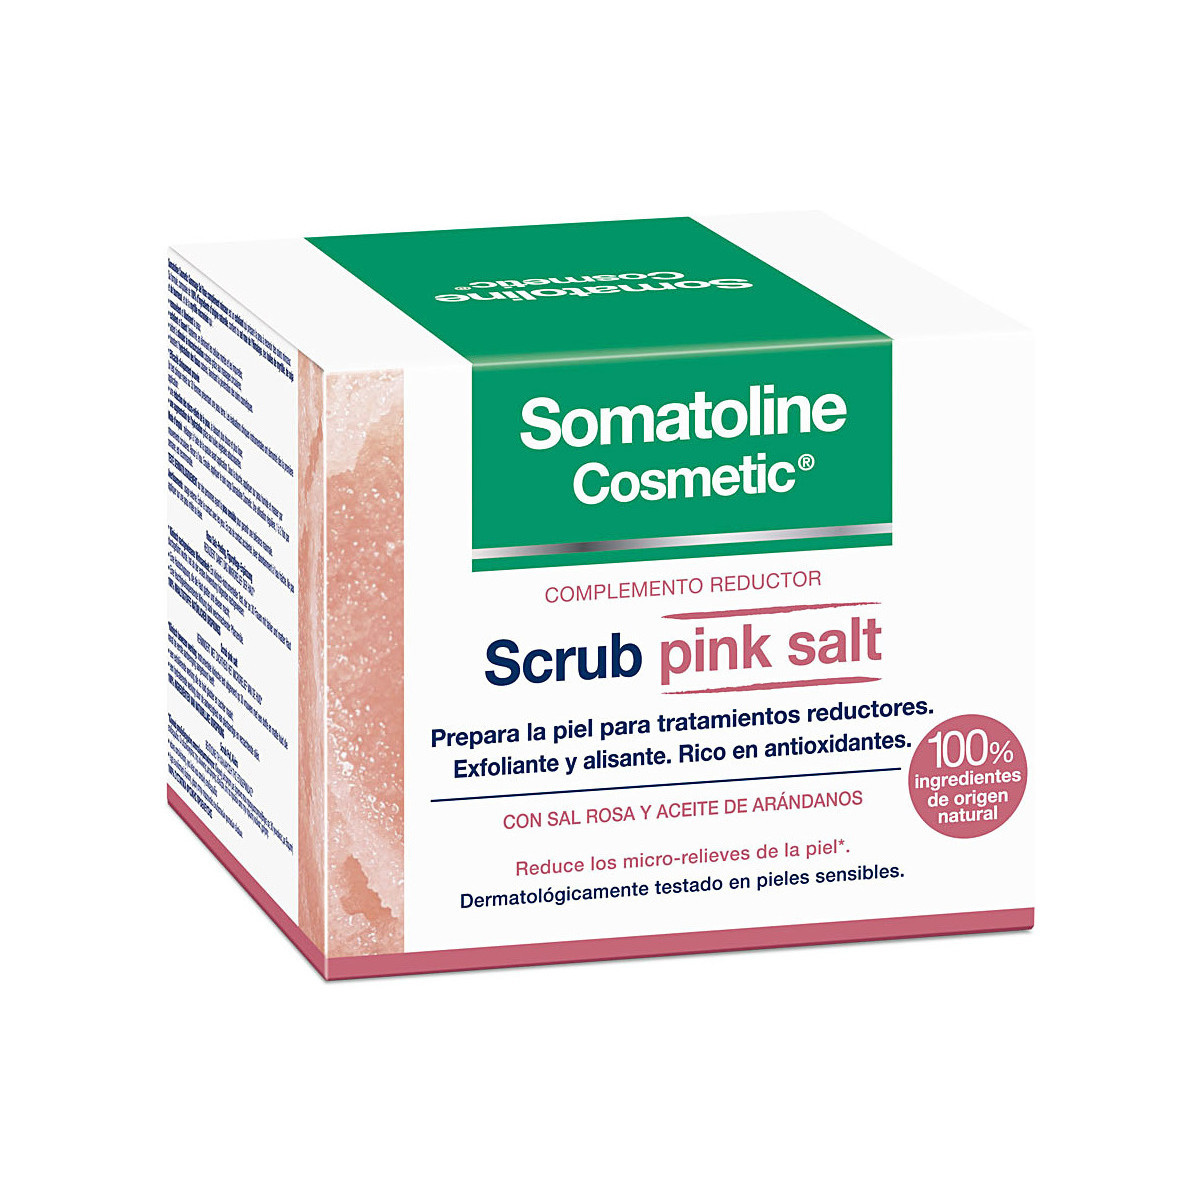 Beauté Femme Soins minceur Somatoline Cosmetic Scrub Exfoliante Complemento Reductor Pink Salt 350 Gr 